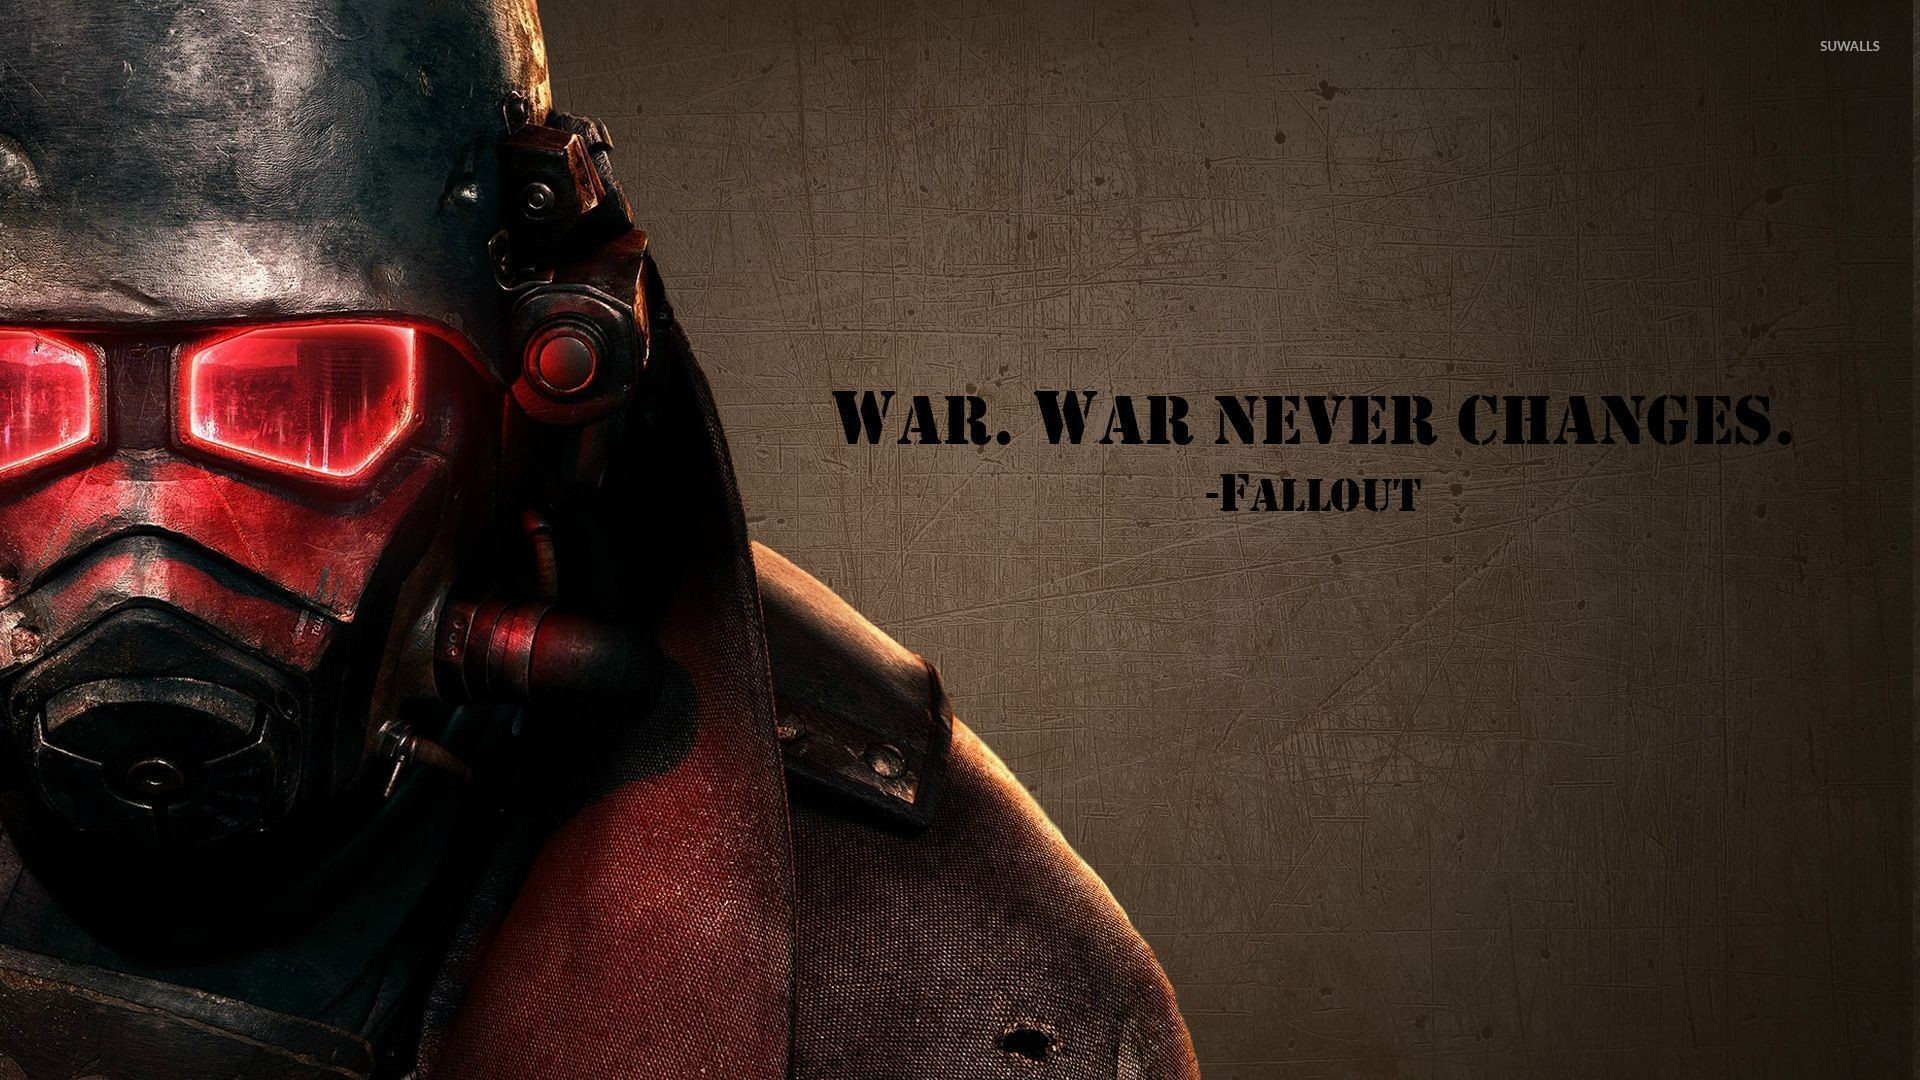 1920x1080 War never changes - Fallout wallpaper  jpg